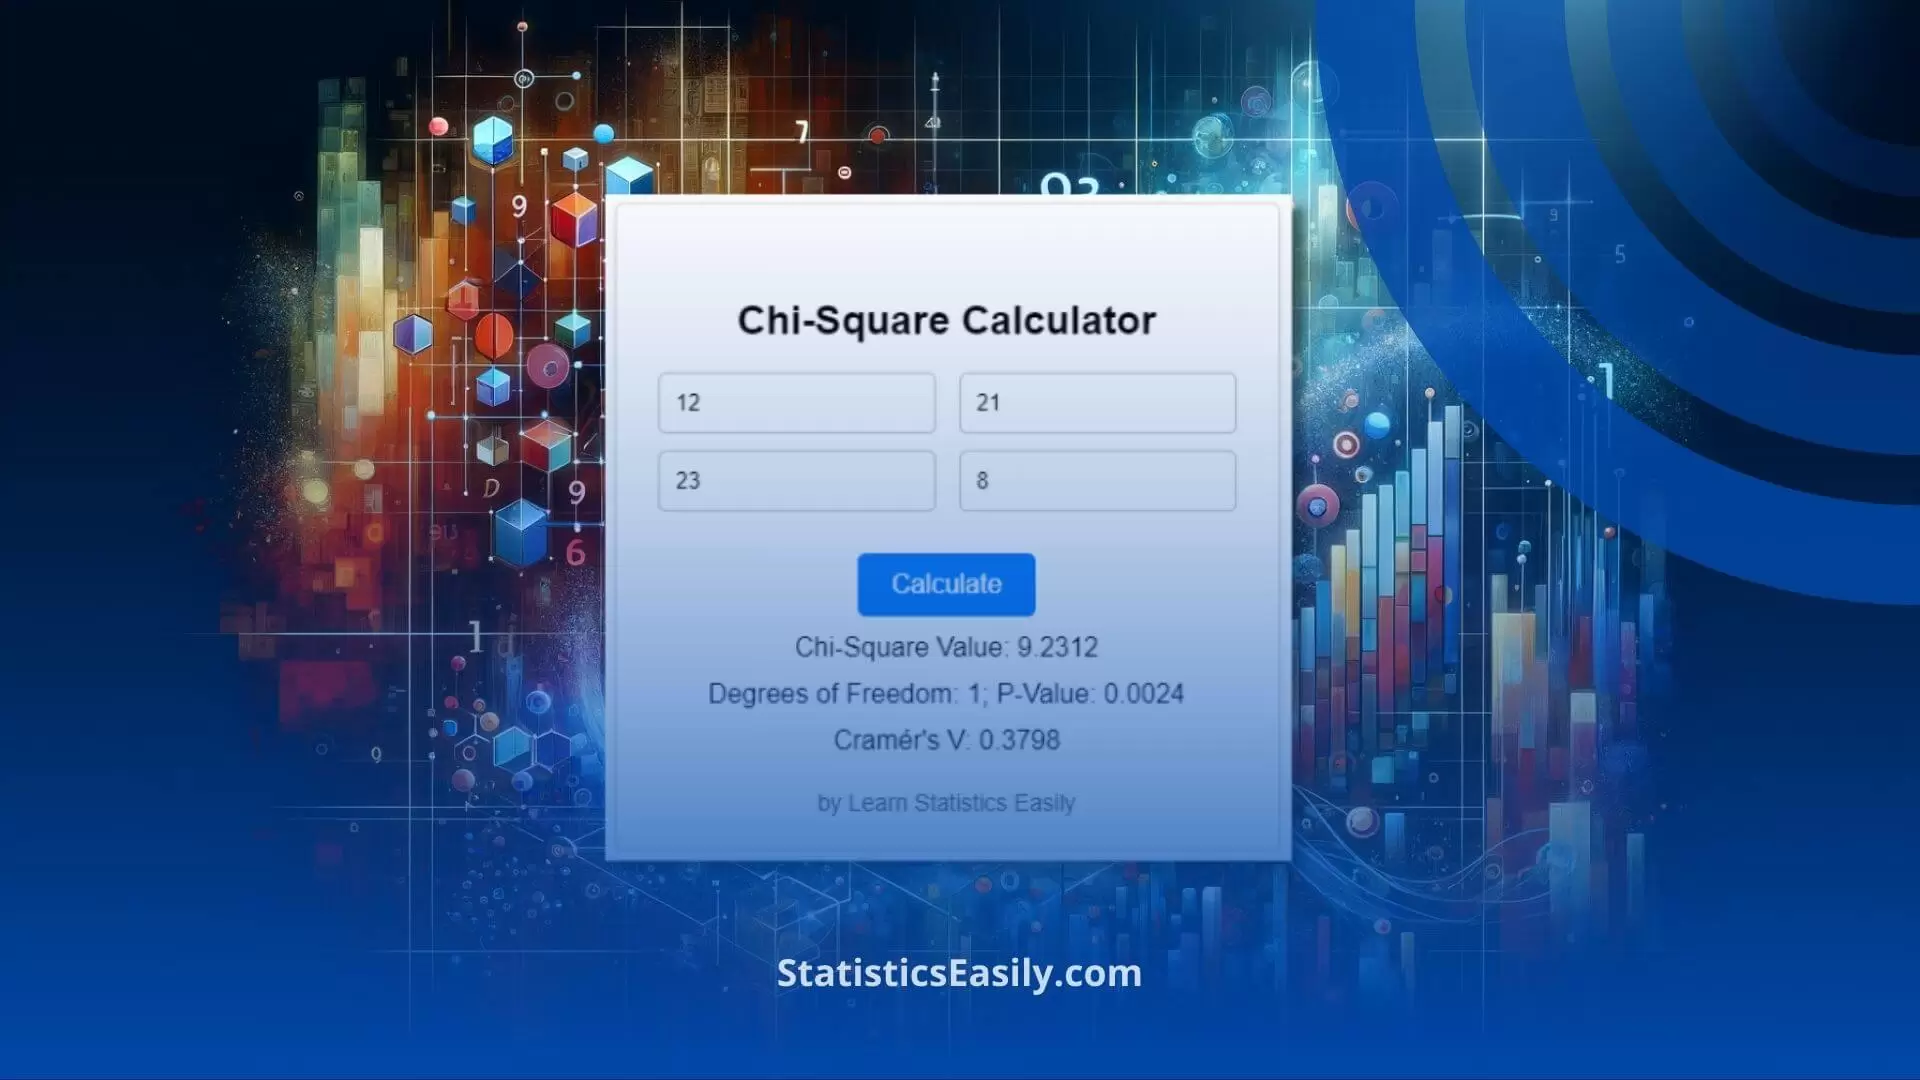 Chi Square Calculator